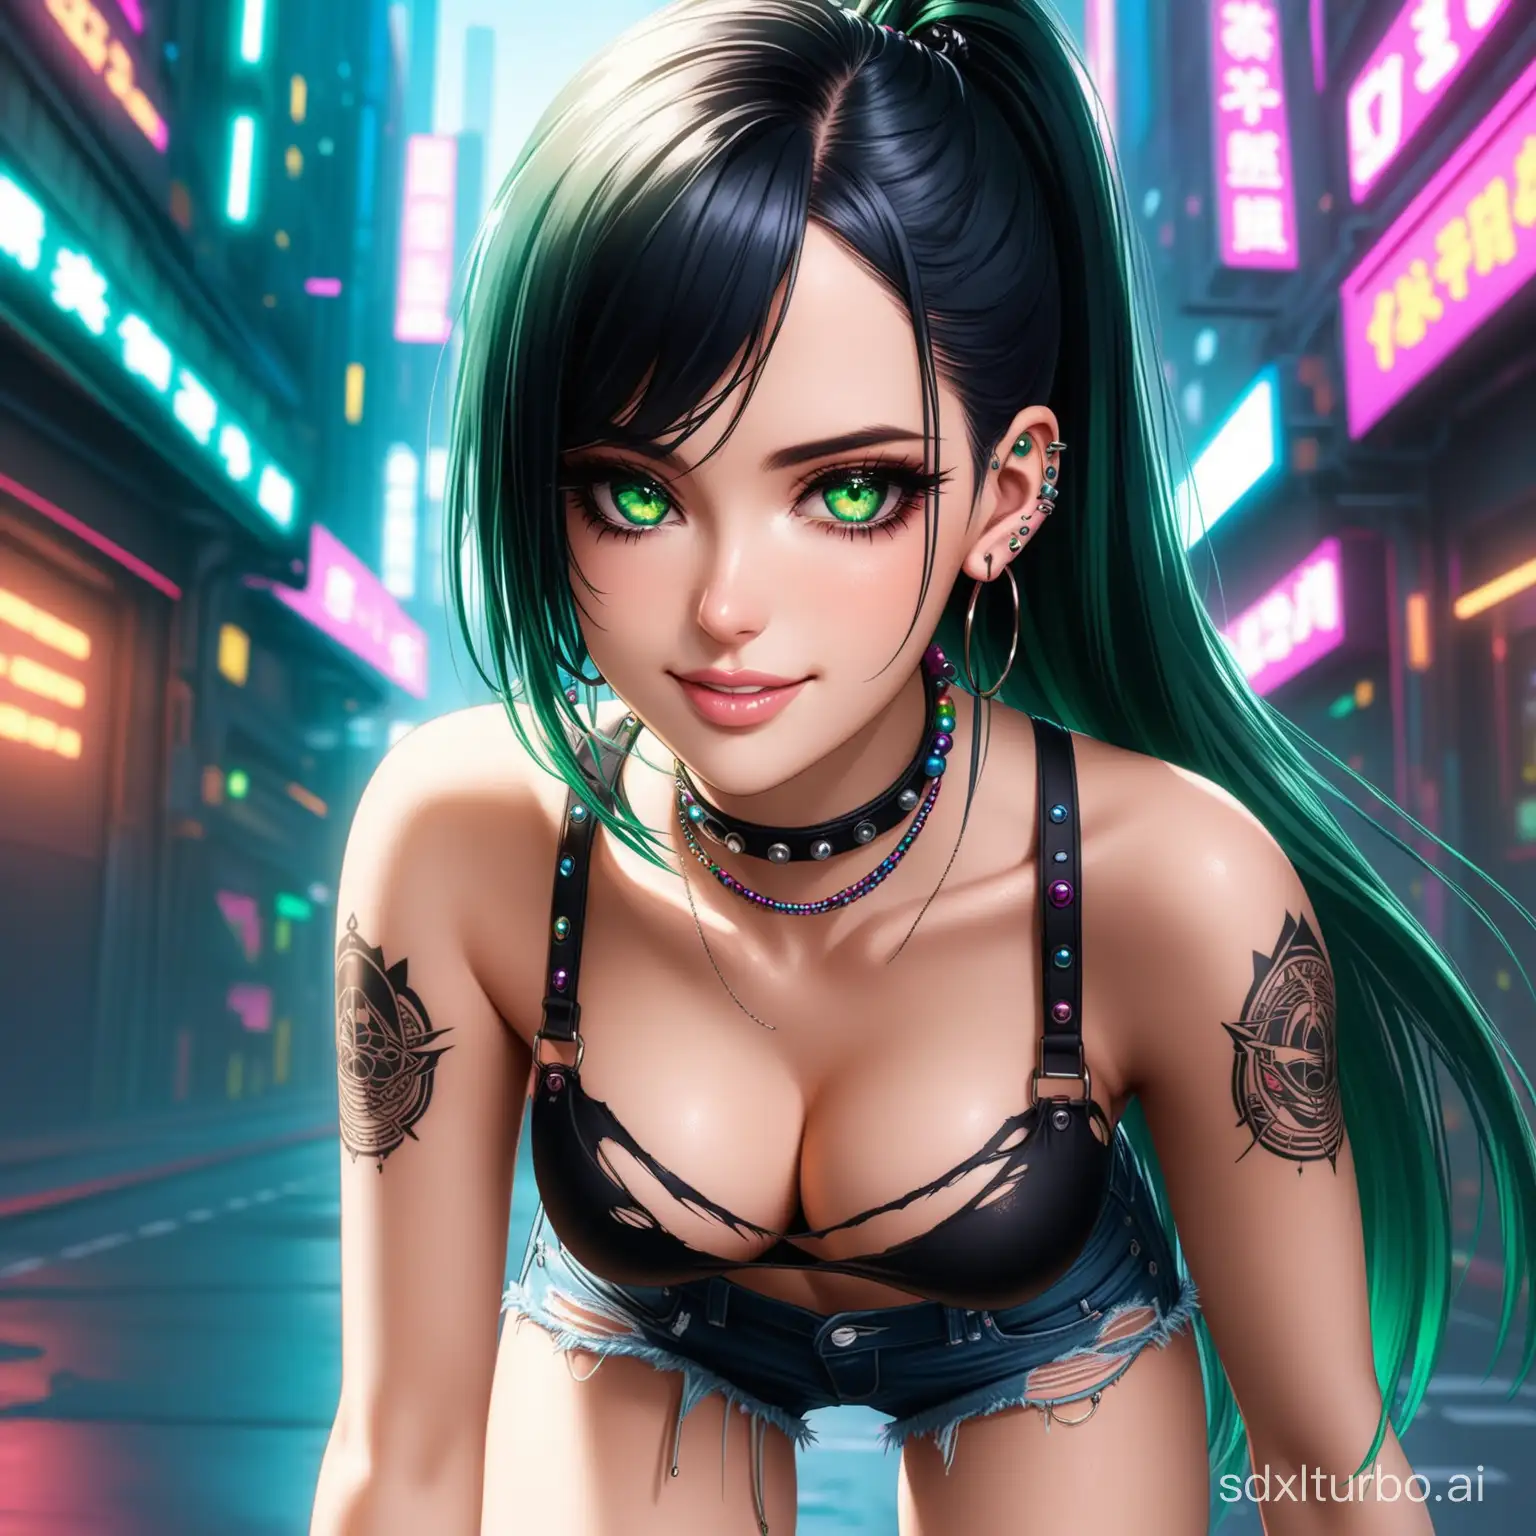 Sultry-Gyaru-Beauty-Eva-Green-in-Cyberpunk-Style-Outdoor-Portrait